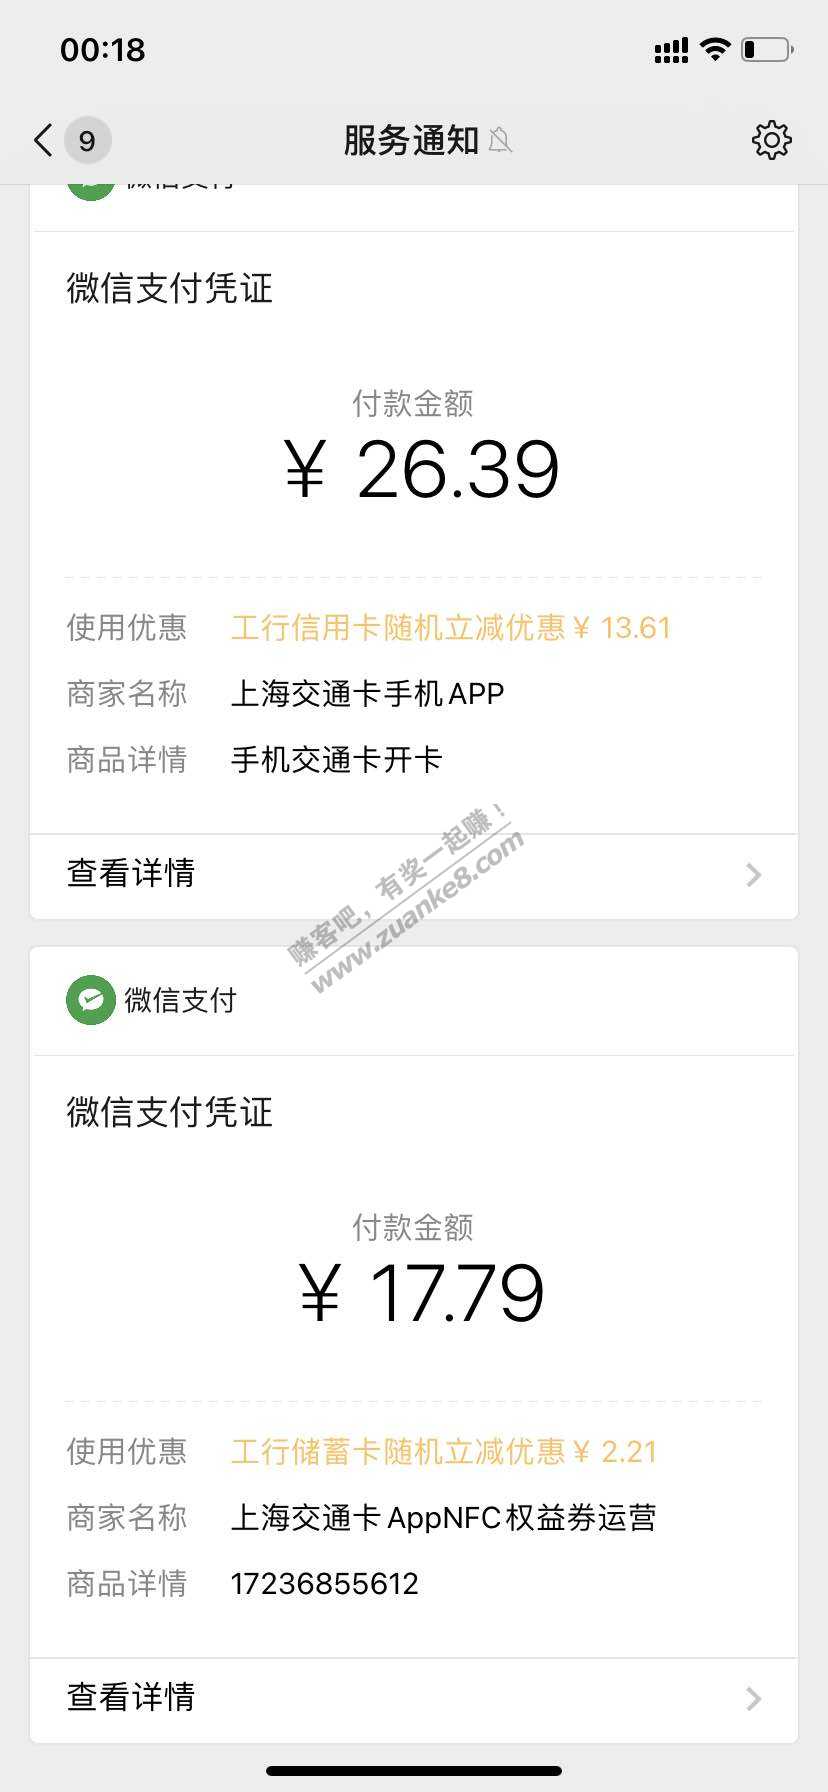 上海交通卡工行卡立减1-15-惠小助(52huixz.com)